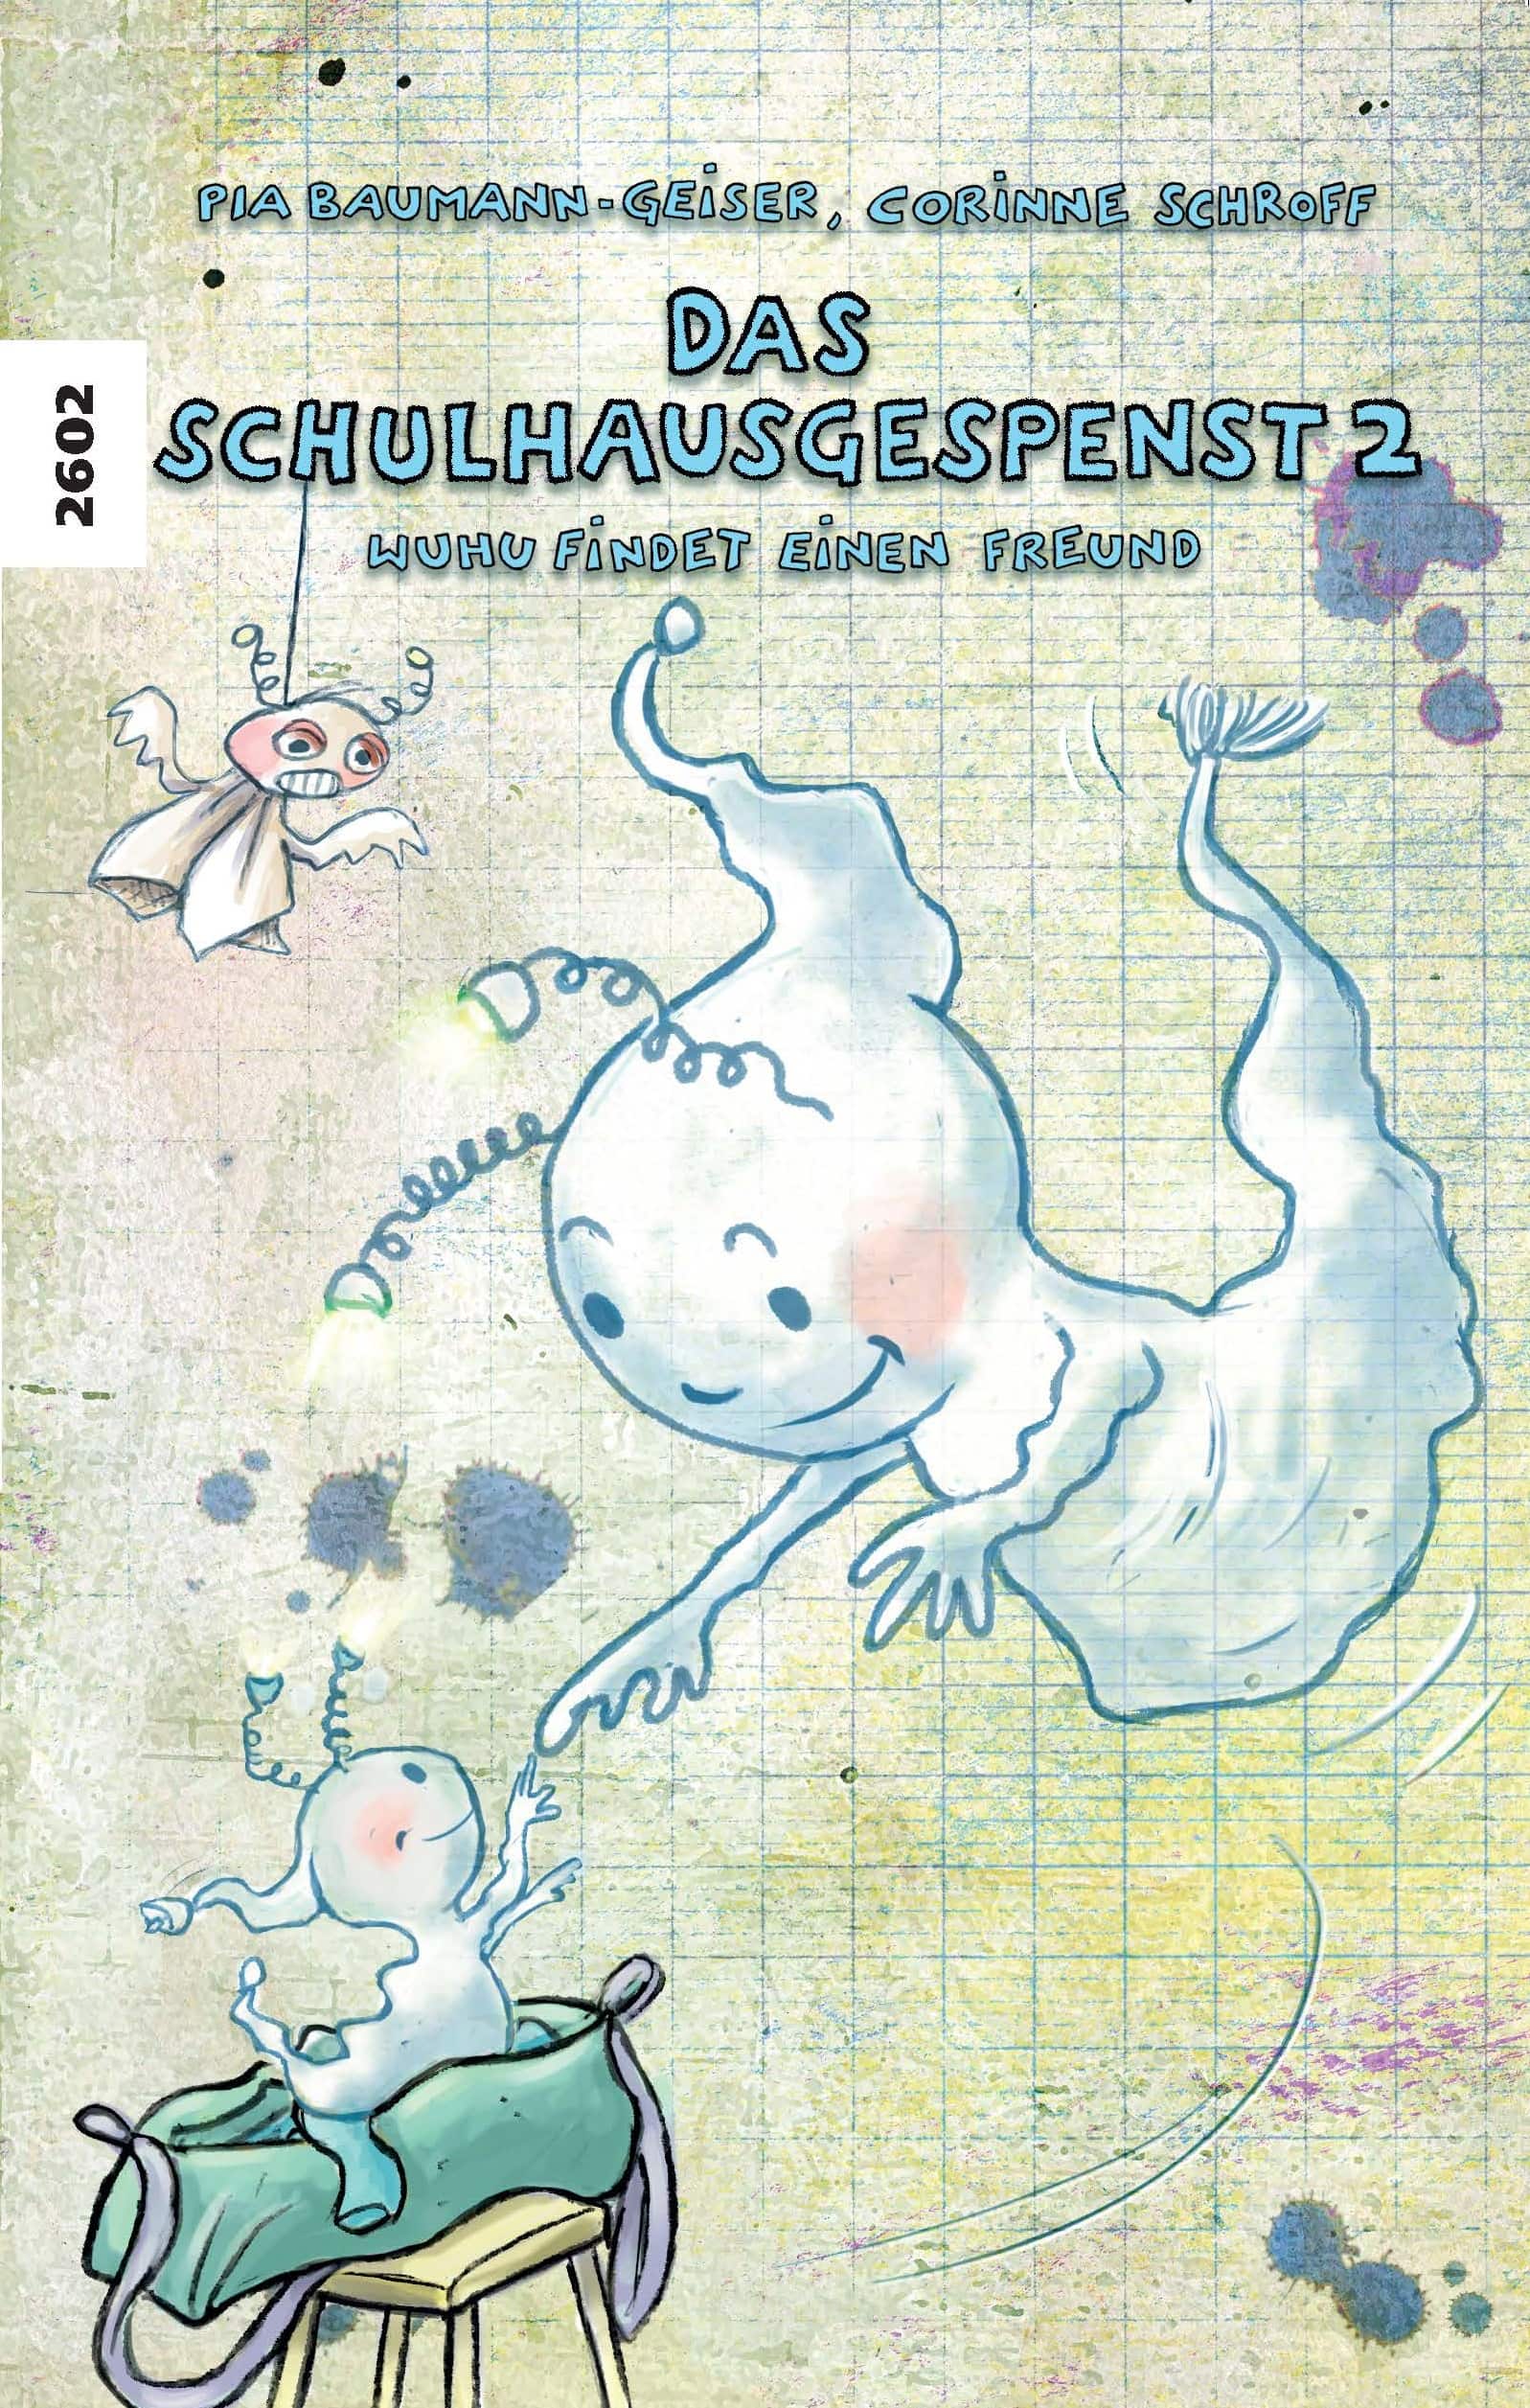 Das Schulhausgespenst 2 - Wuhu findet einen Freund, ein Kinderbuch von Pia Baumann-Geiser, Illustration Corinne Schroff, SJW